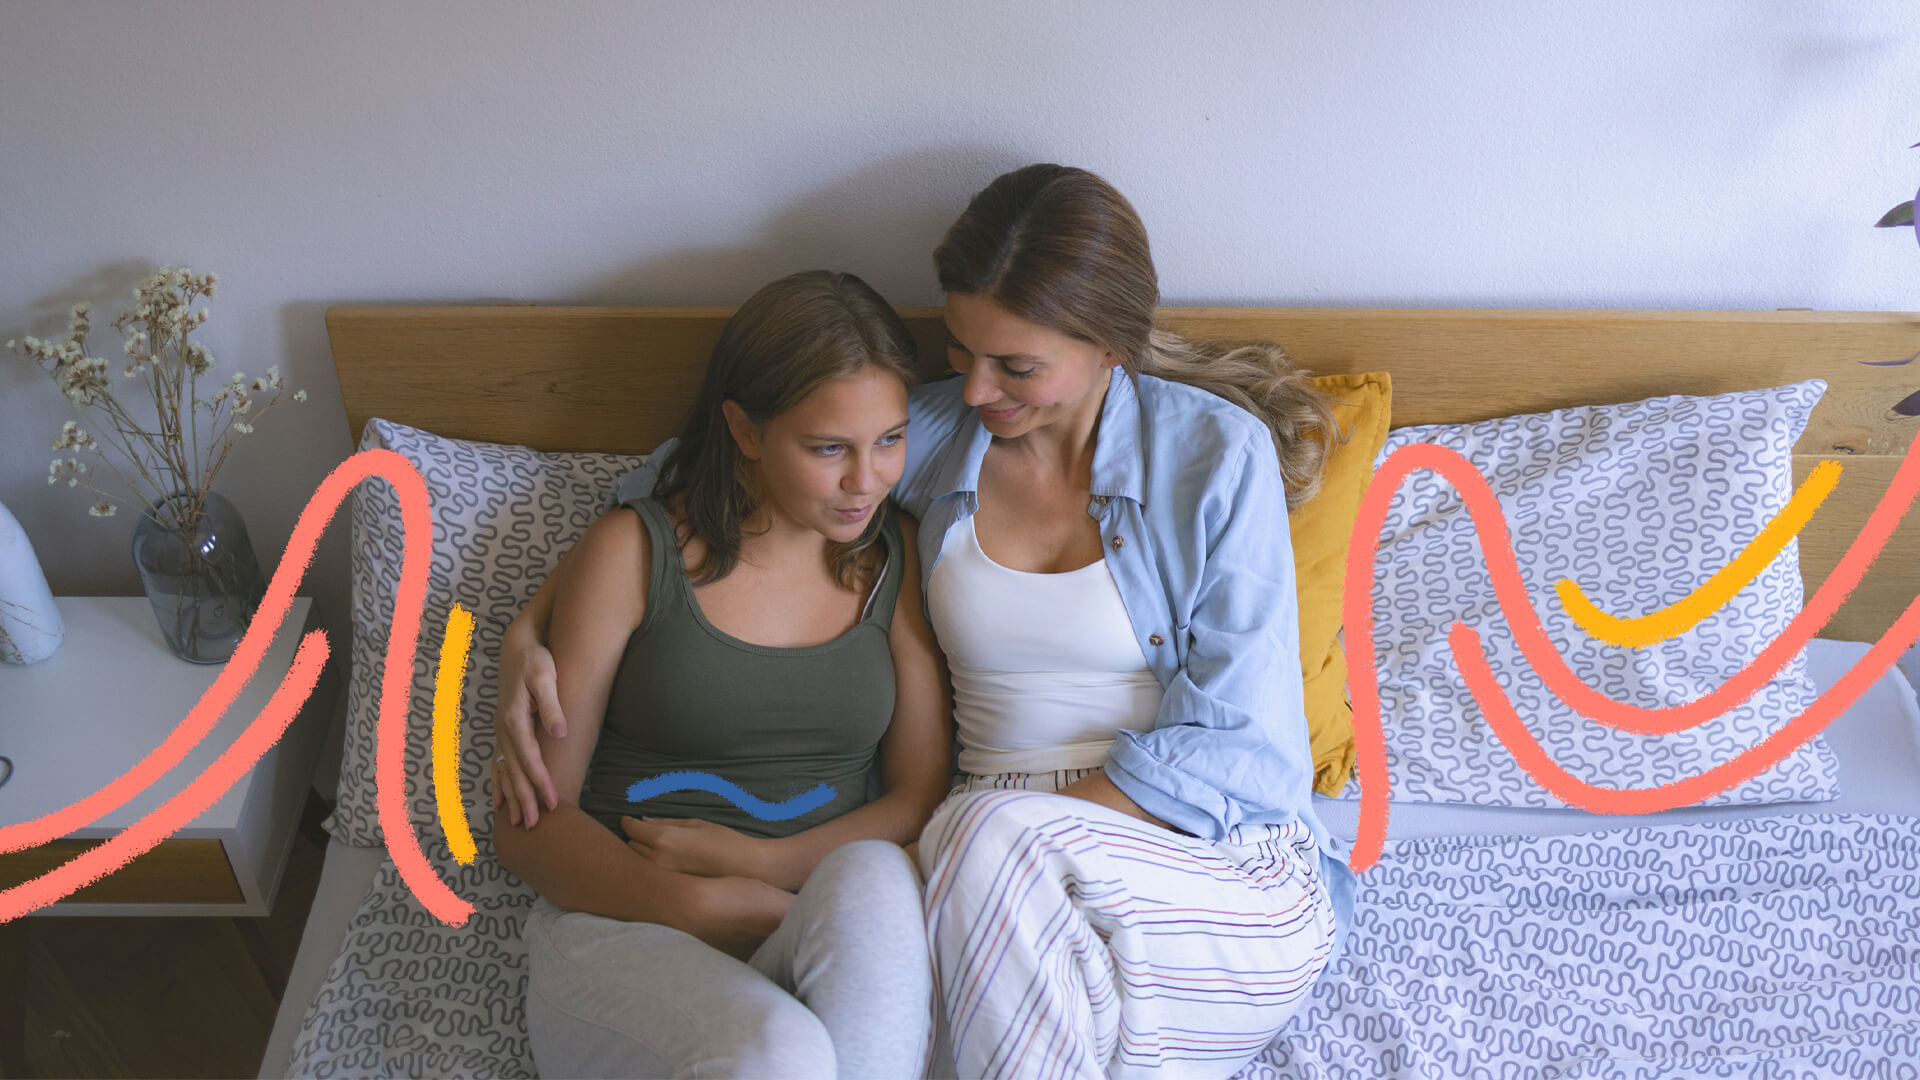 Mãe e filha adolescente estão sentadas conversando. A garota está com os braços cercando a região da barriga. A imagem ilustra uma matéria sobre primeira menstruação.